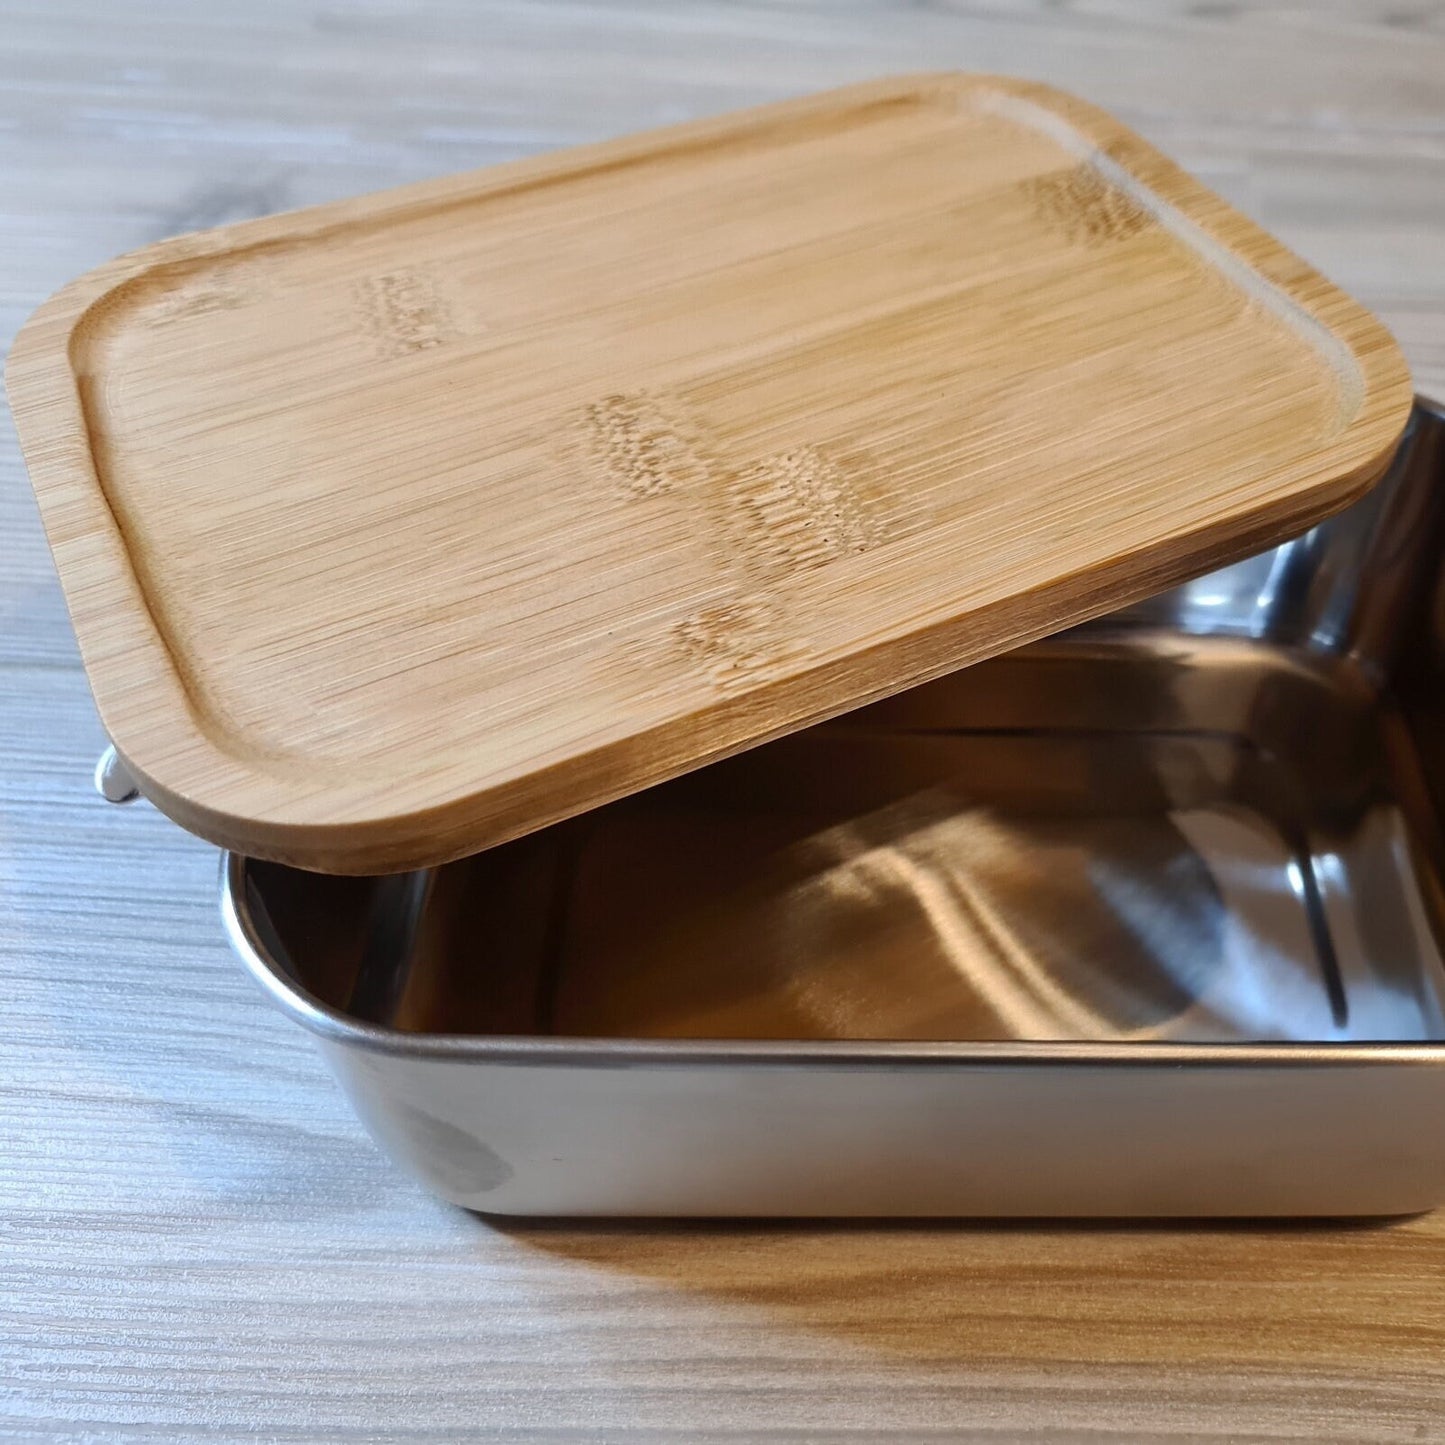 Lunchbox "Einhorn" - mit Name personalisiert - aus Edelstahl mit Bambusdeckel